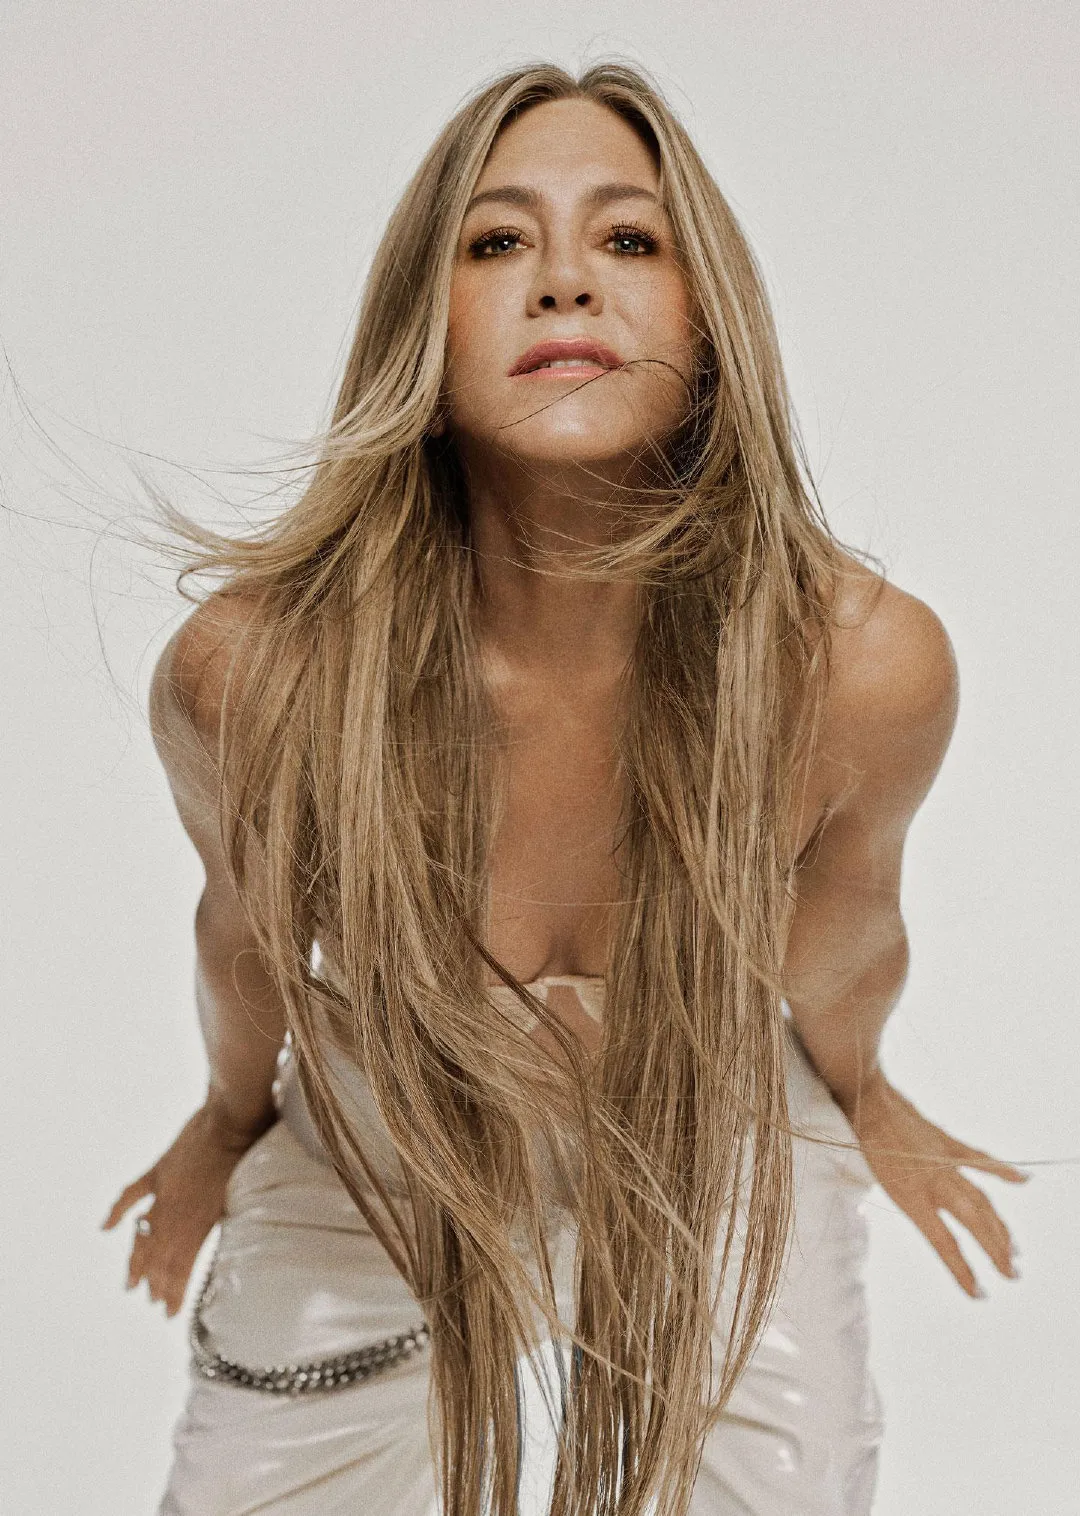 Jennifer Aniston, 'Allure' December issue photo ​​​ | FMV6